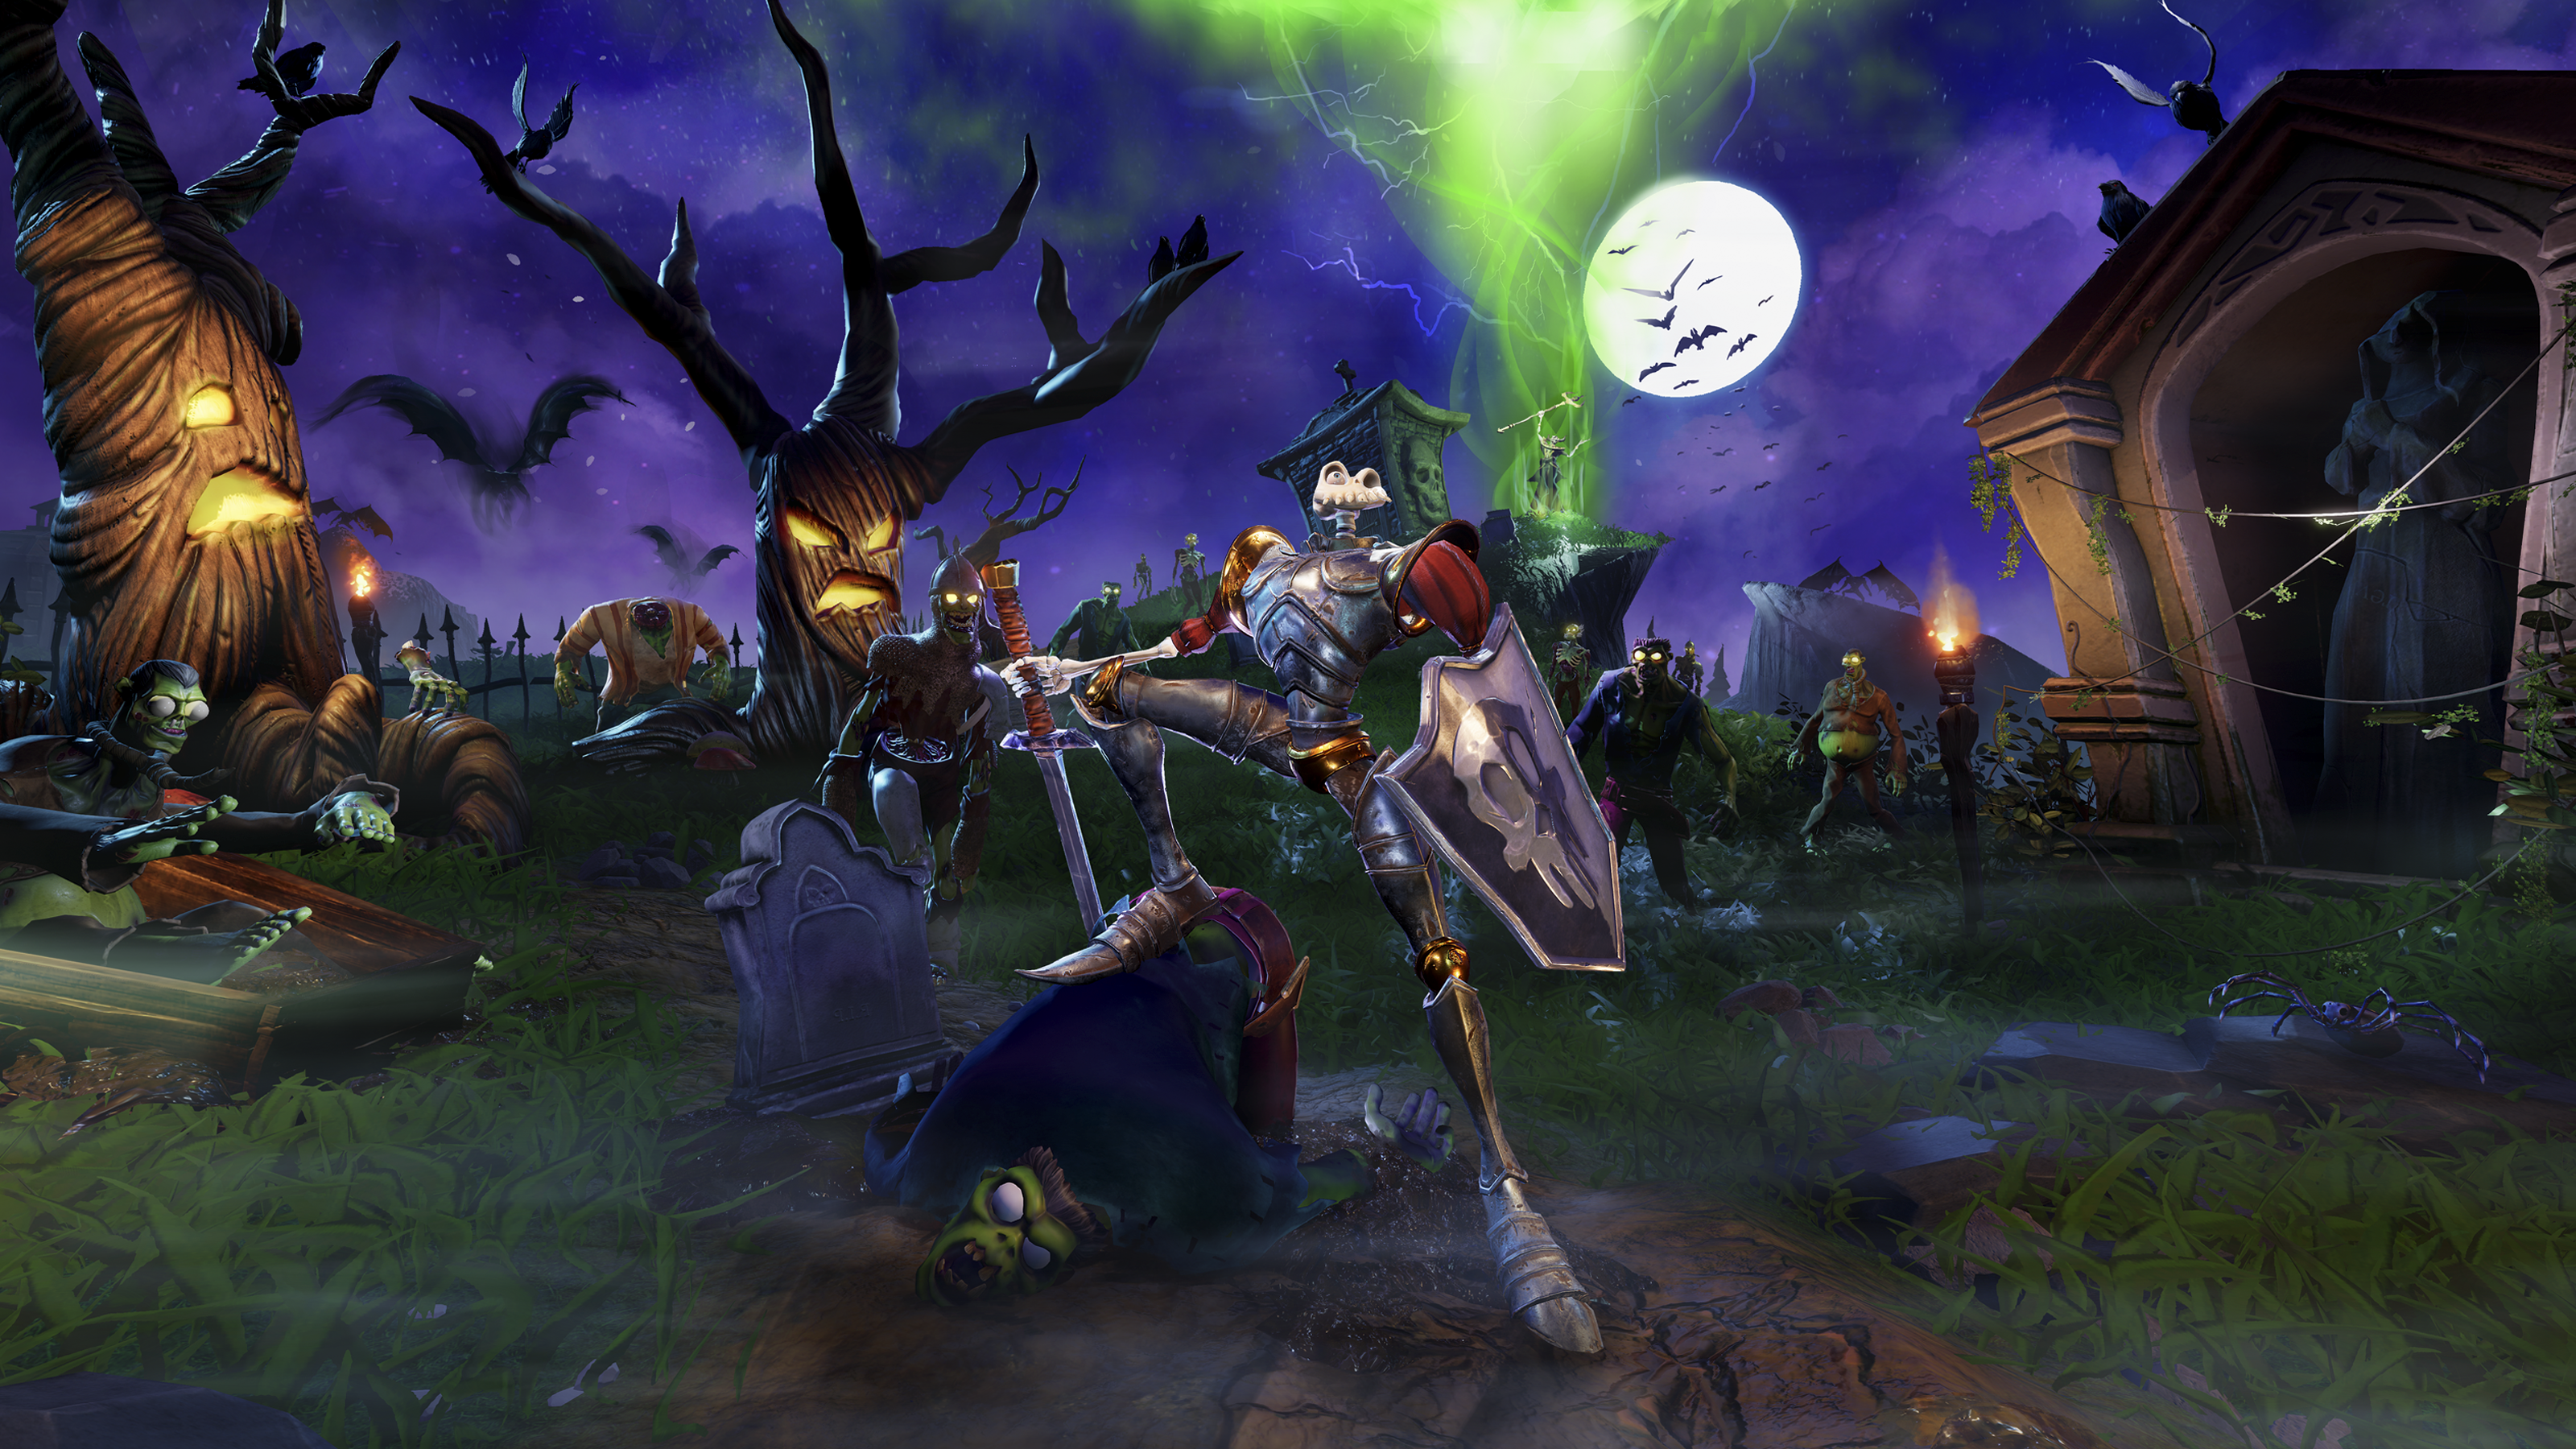 Glavna ilustracija iz igre MediEvil koja prikazuje glavnog lika Sir Daniela Fortesquea na jezovitom groblju koje obasjava mjesečina.